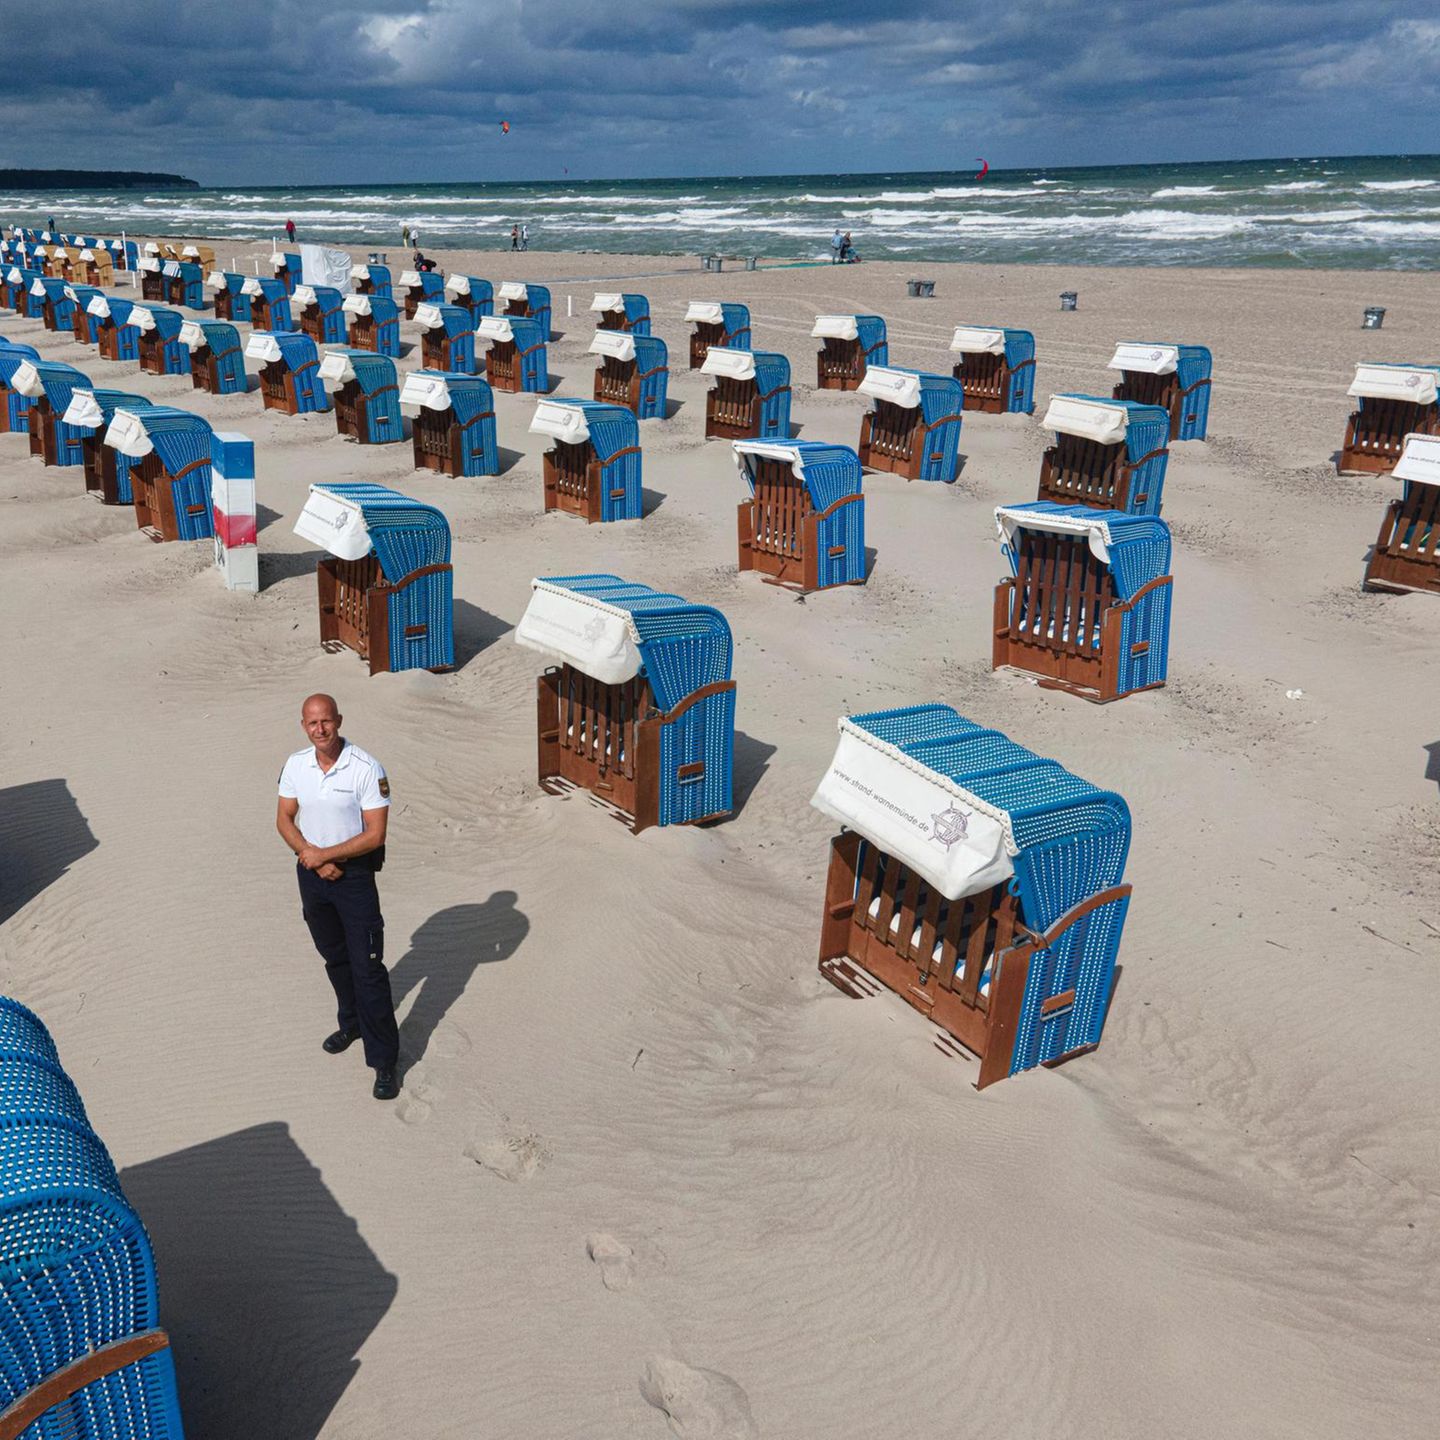 Warnemünde, Deutschland: Der Strandvogt Stefan Bischoff ist Küstensheriff an der Ostsee. Er vollstreckt das Sandgesetz und setzt Regeln durch, um das Miteinander und die Natur zu schützen